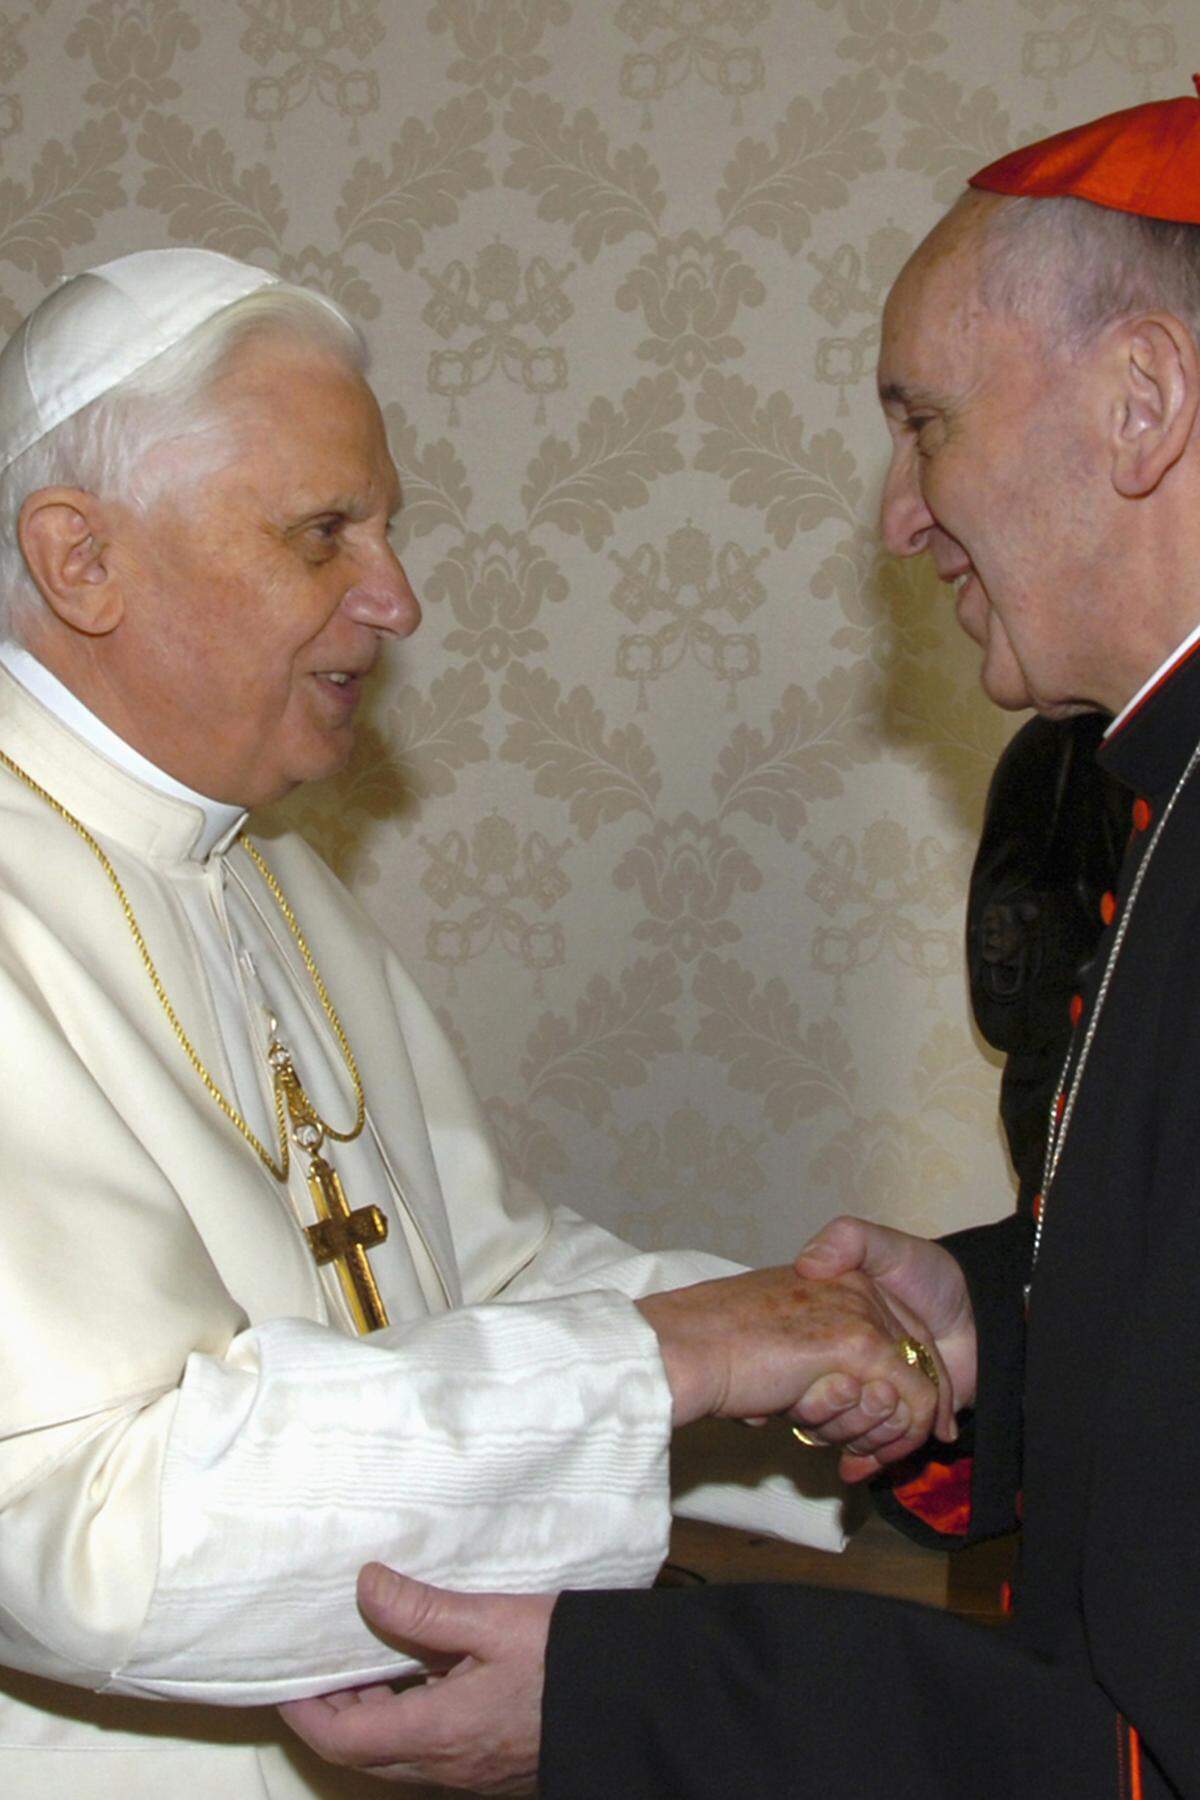 Gruppenbild der Päpste. Der emeritierte Papst Benedikt XVI. mit dem neuen Papst, damals noch Kardinal, Jorge Mario Bergoglio, jetzt Papst Franziskus.